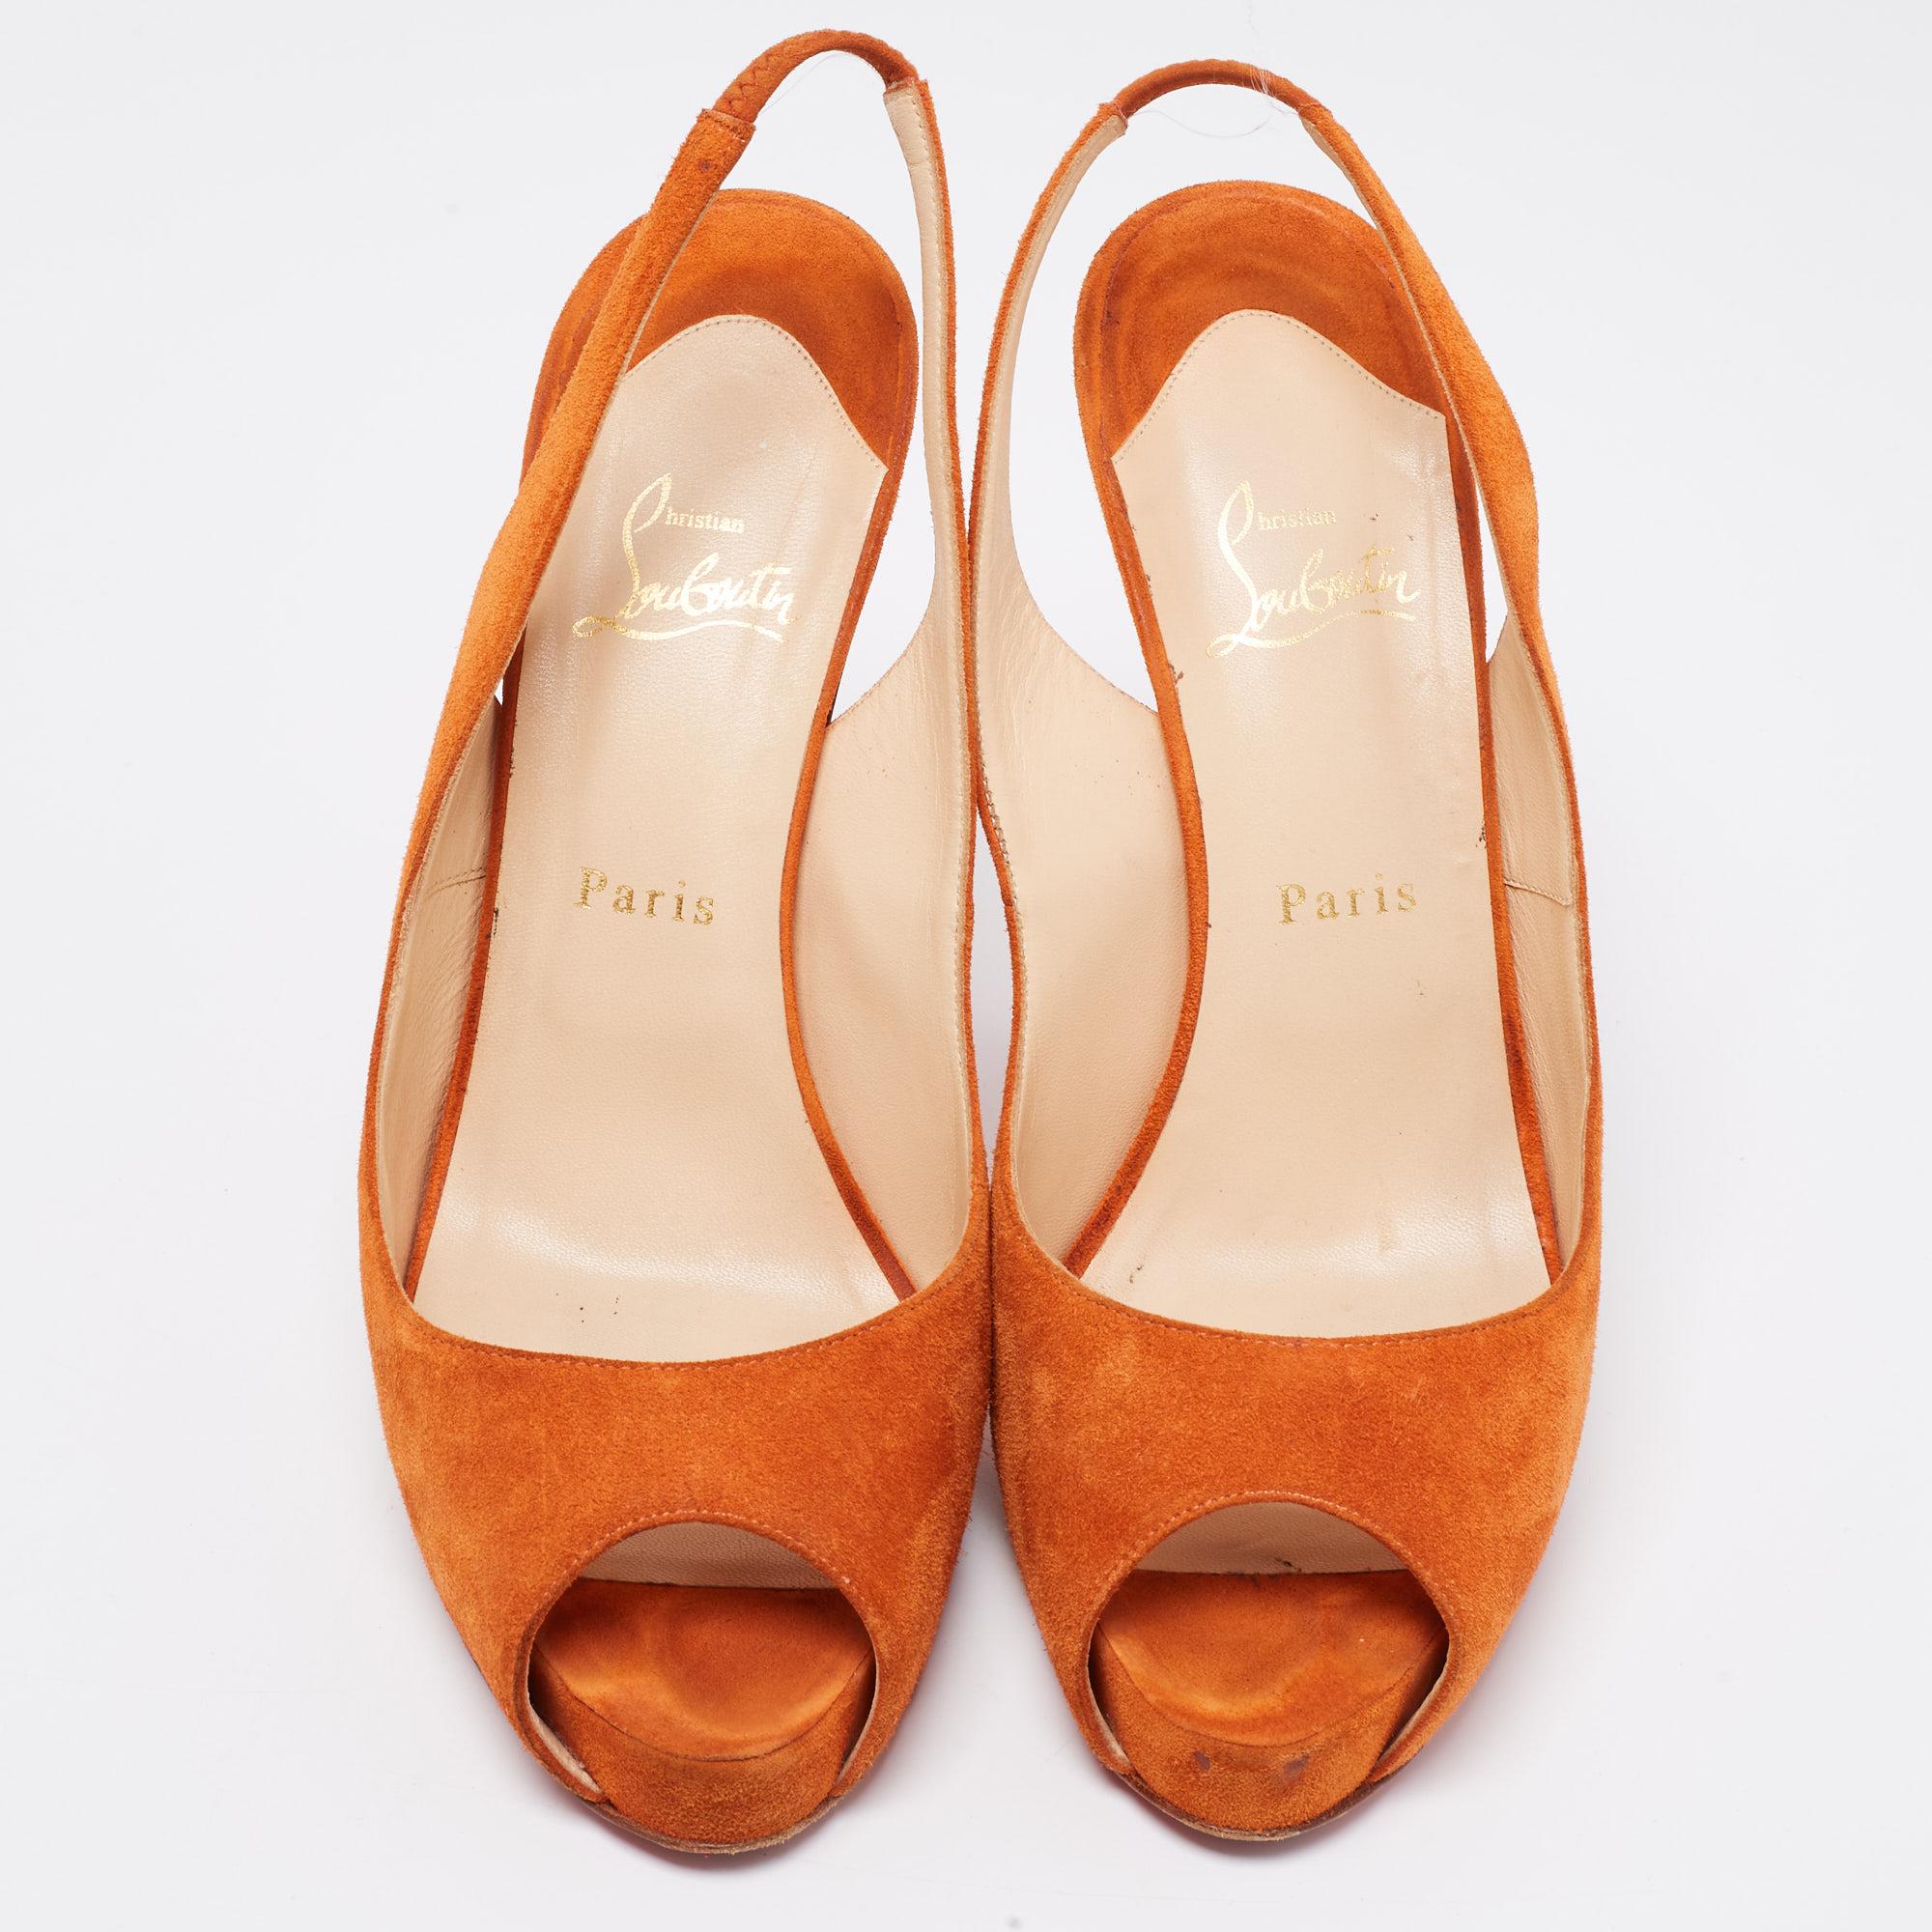 orange sling back heels